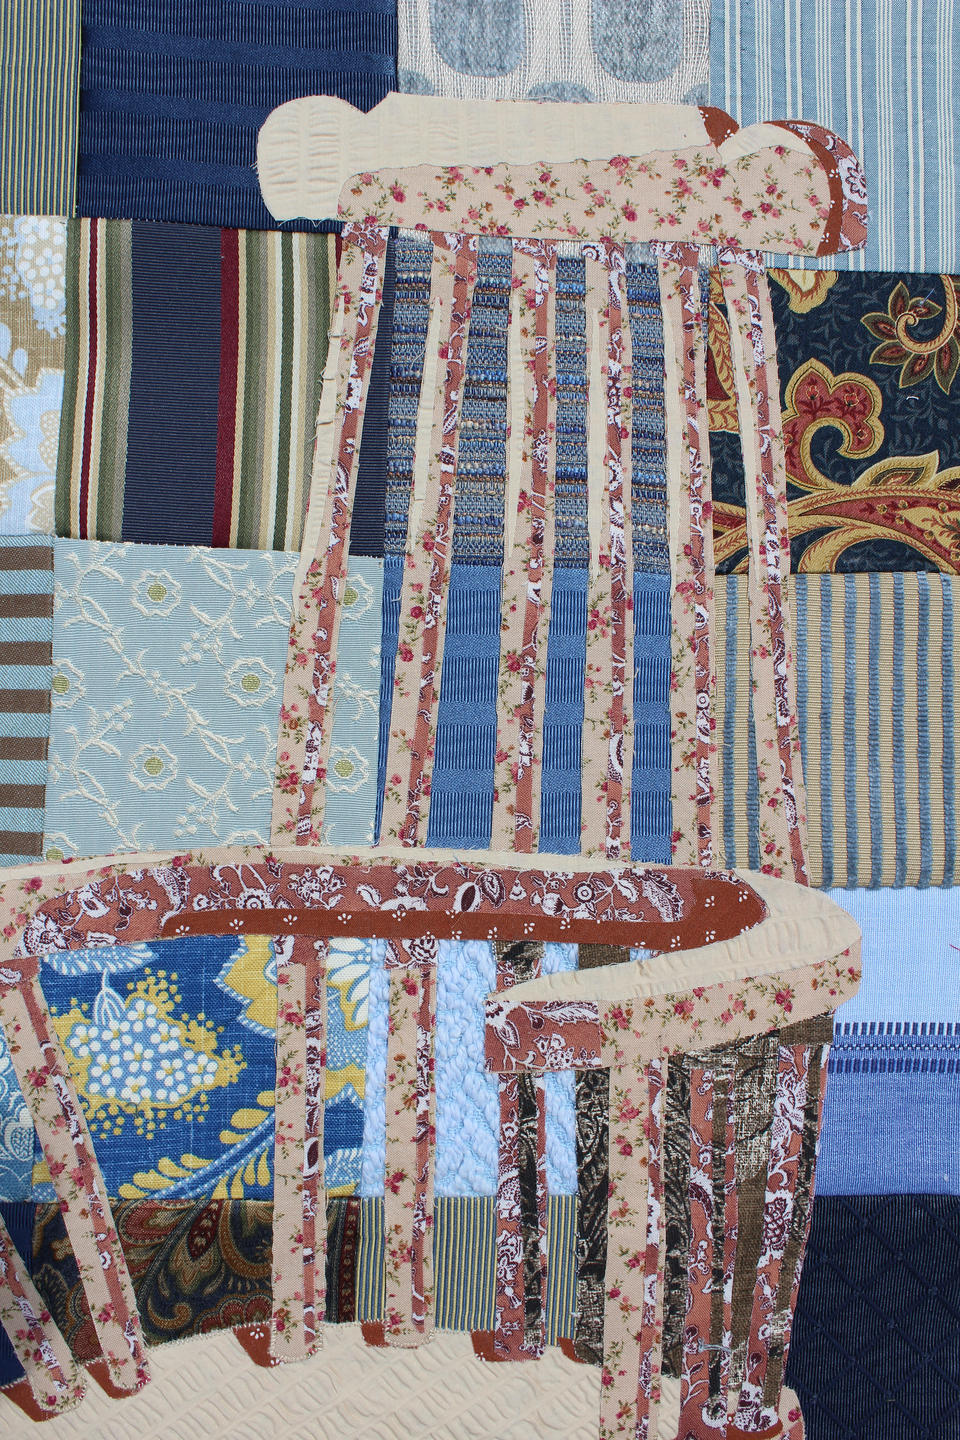 Detail of fabric work by Jocelyn Arruda